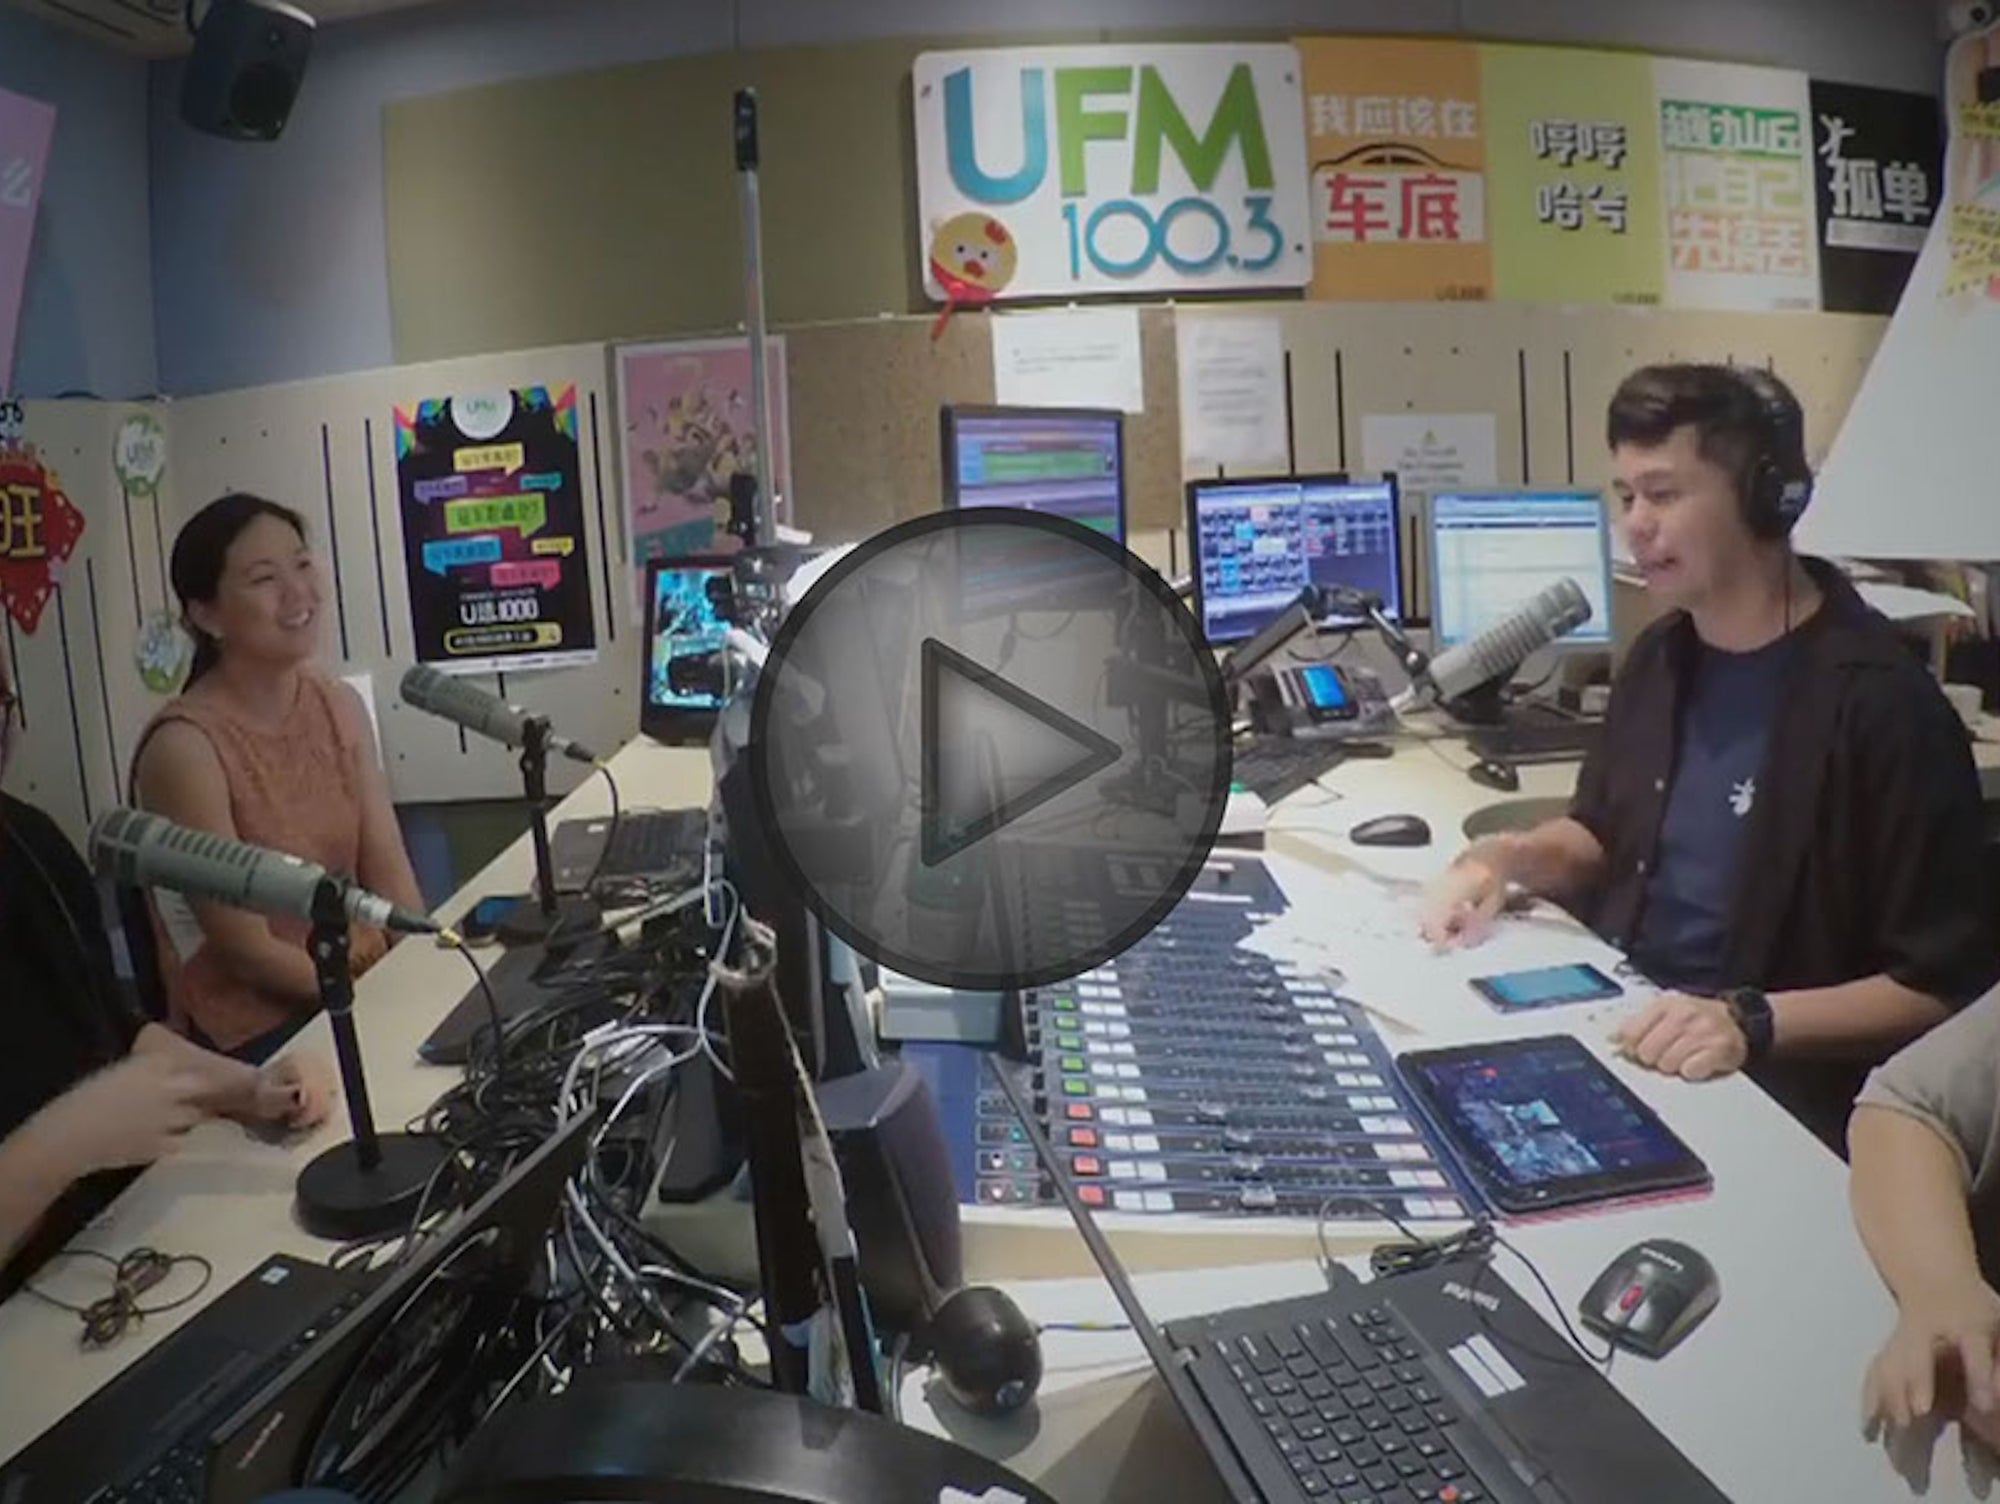 UFM 100.3 Live Interview